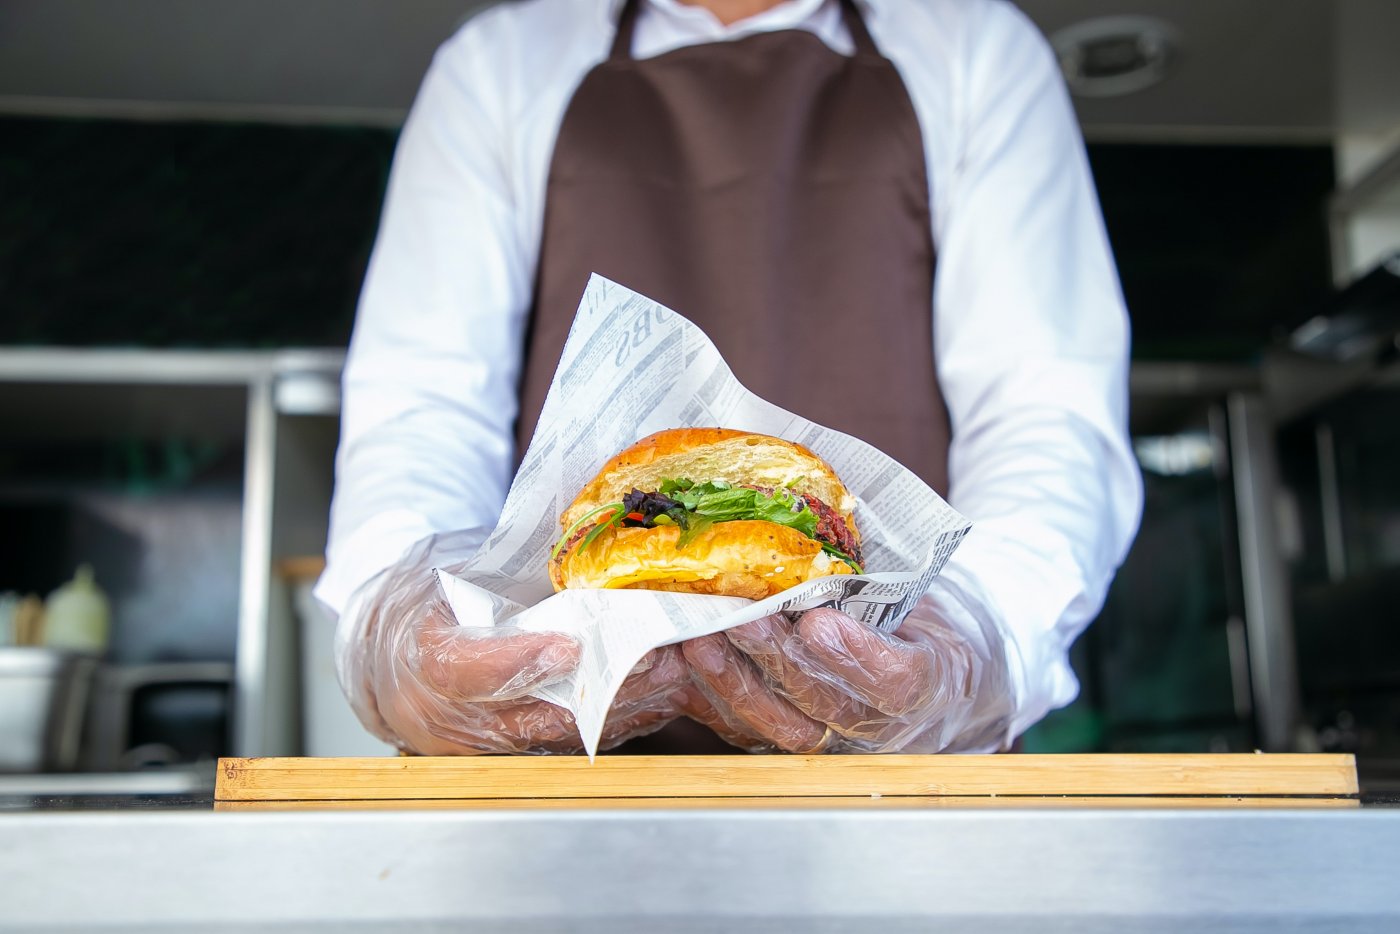 Food trucki to mobilne restauracje popularne szczególnie latem, gdy pozwalają zjeść coś pod przysłowiową chmurką, zdj. ilustracyjne / Pexels